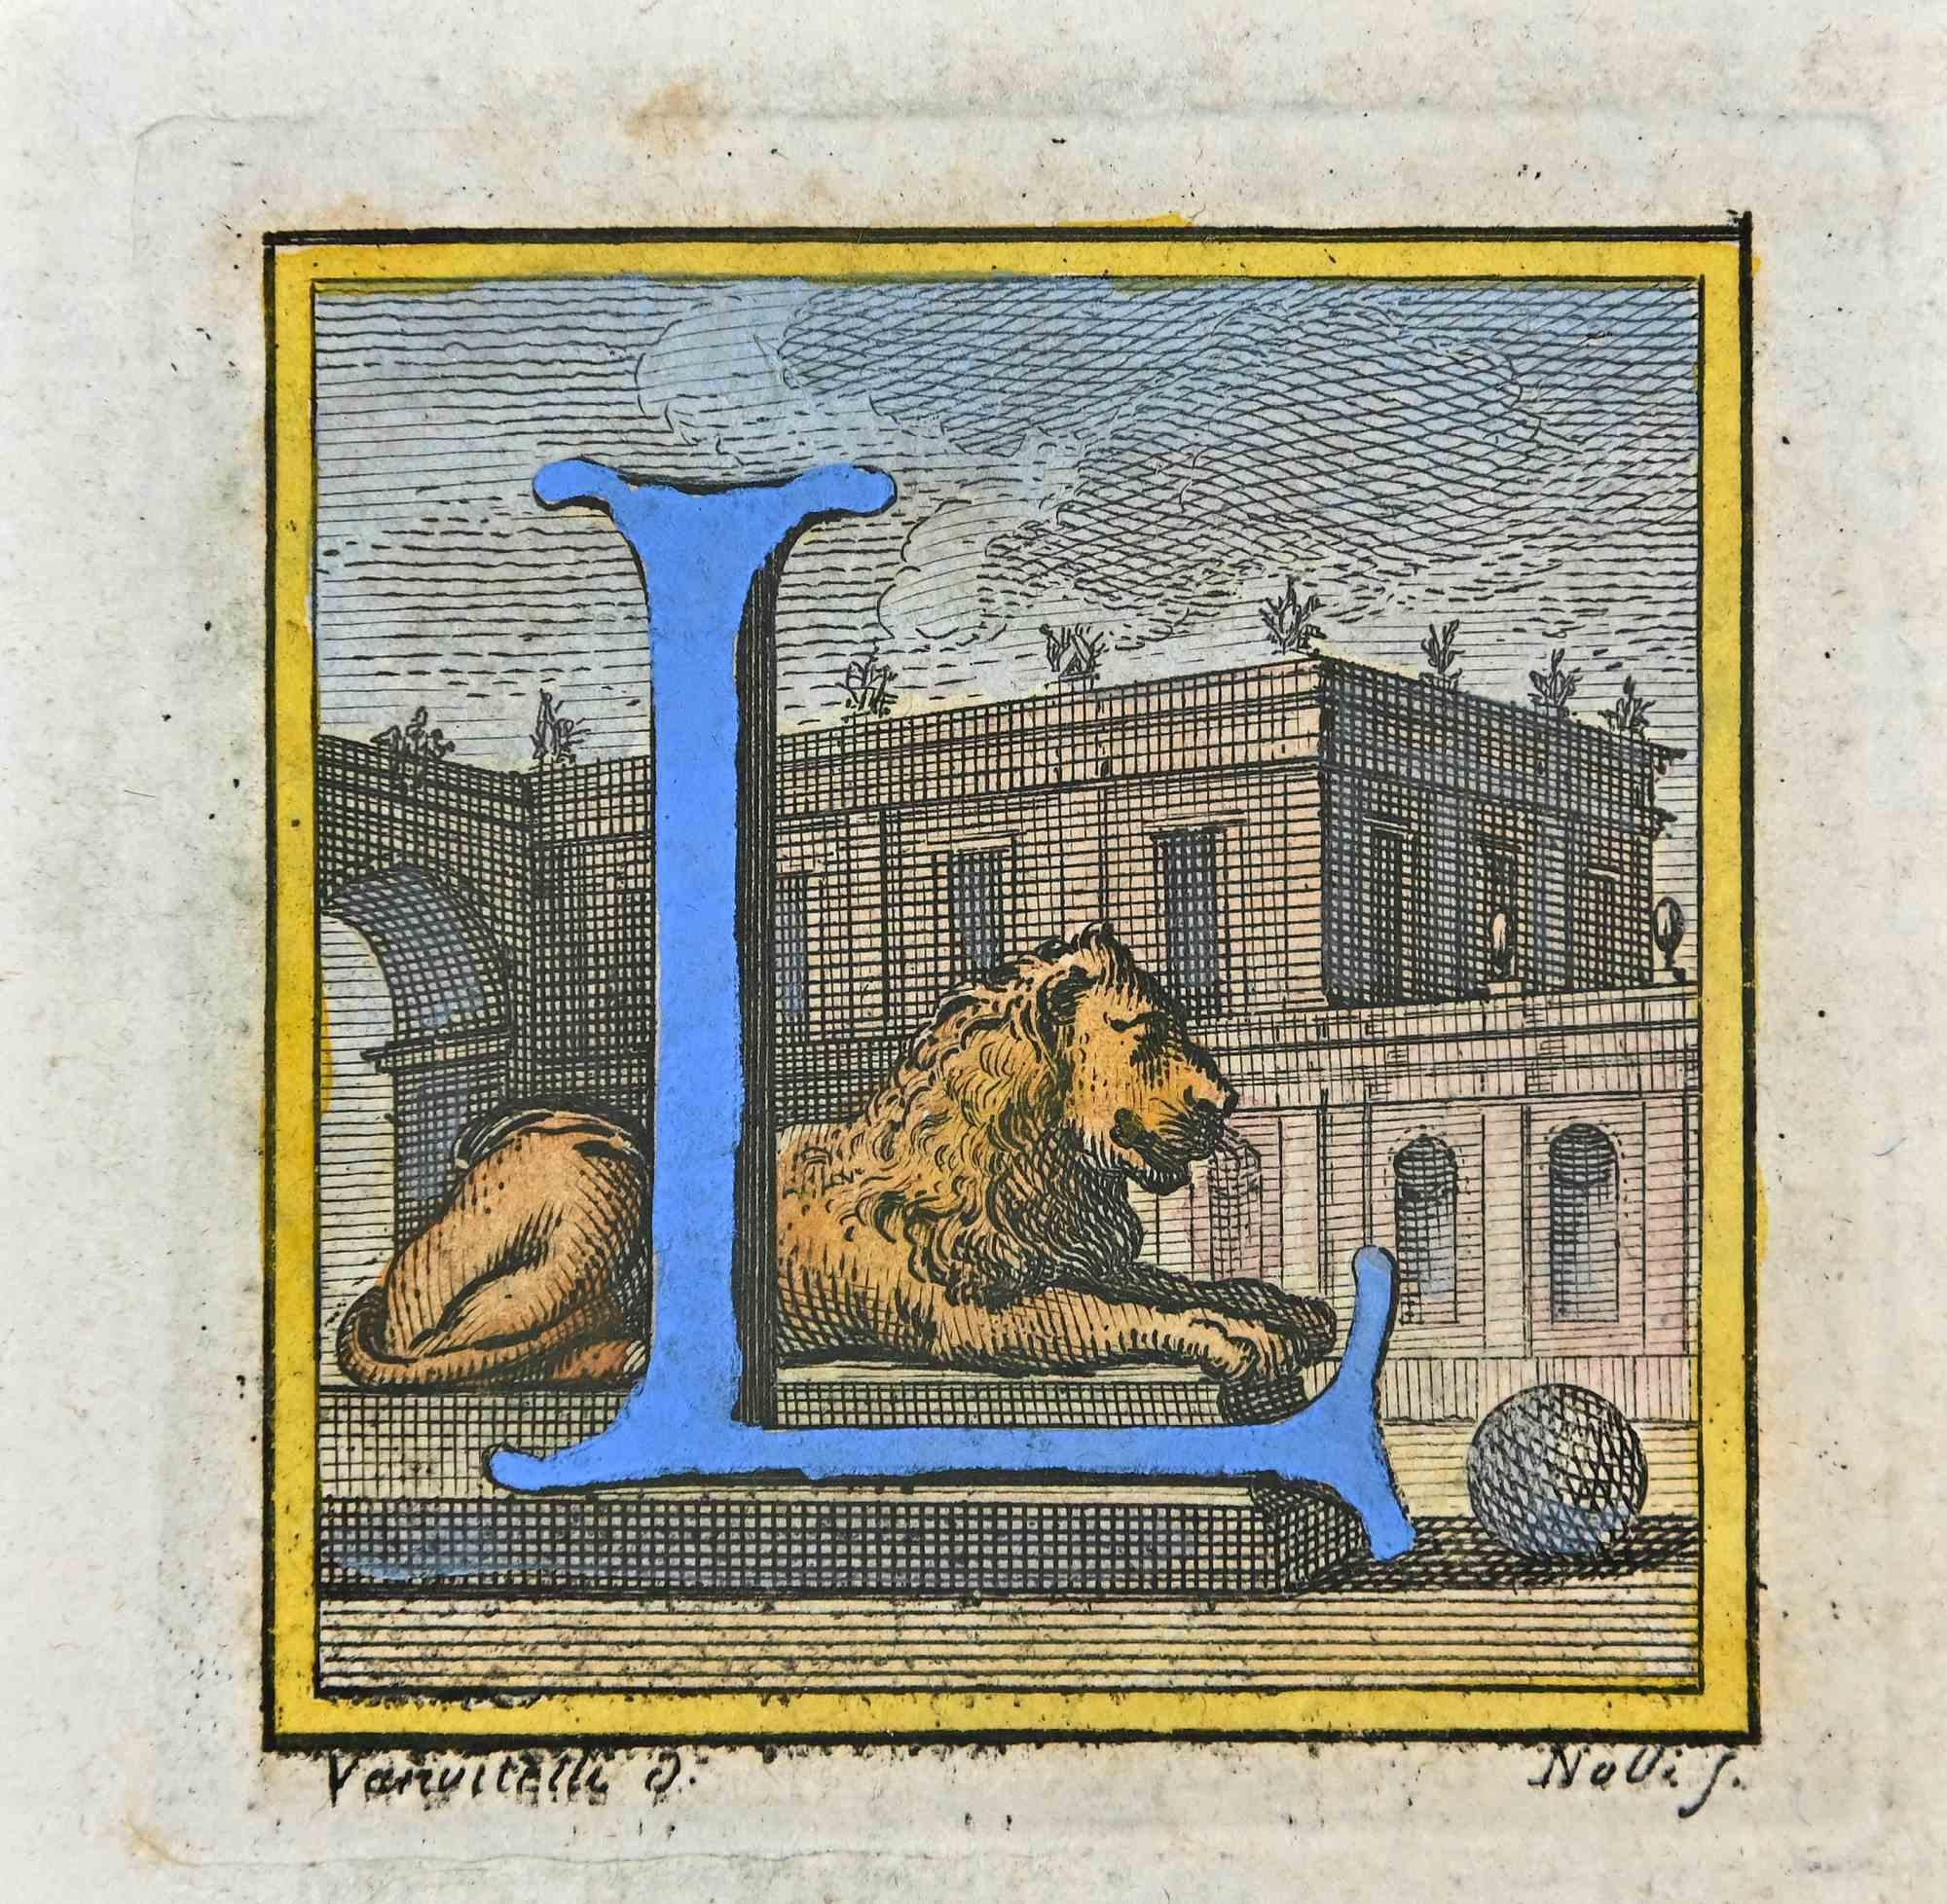 Lettre de l'alphabet L  de la série "Antiquités d'Herculanum", est une gravure sur papier réalisée par Luigi Vanvitelli au 18ème siècle.

Signé sur la plaque.

Bonnes conditions.

La gravure appartient à la suite d'estampes "Antiquités d'Herculanum